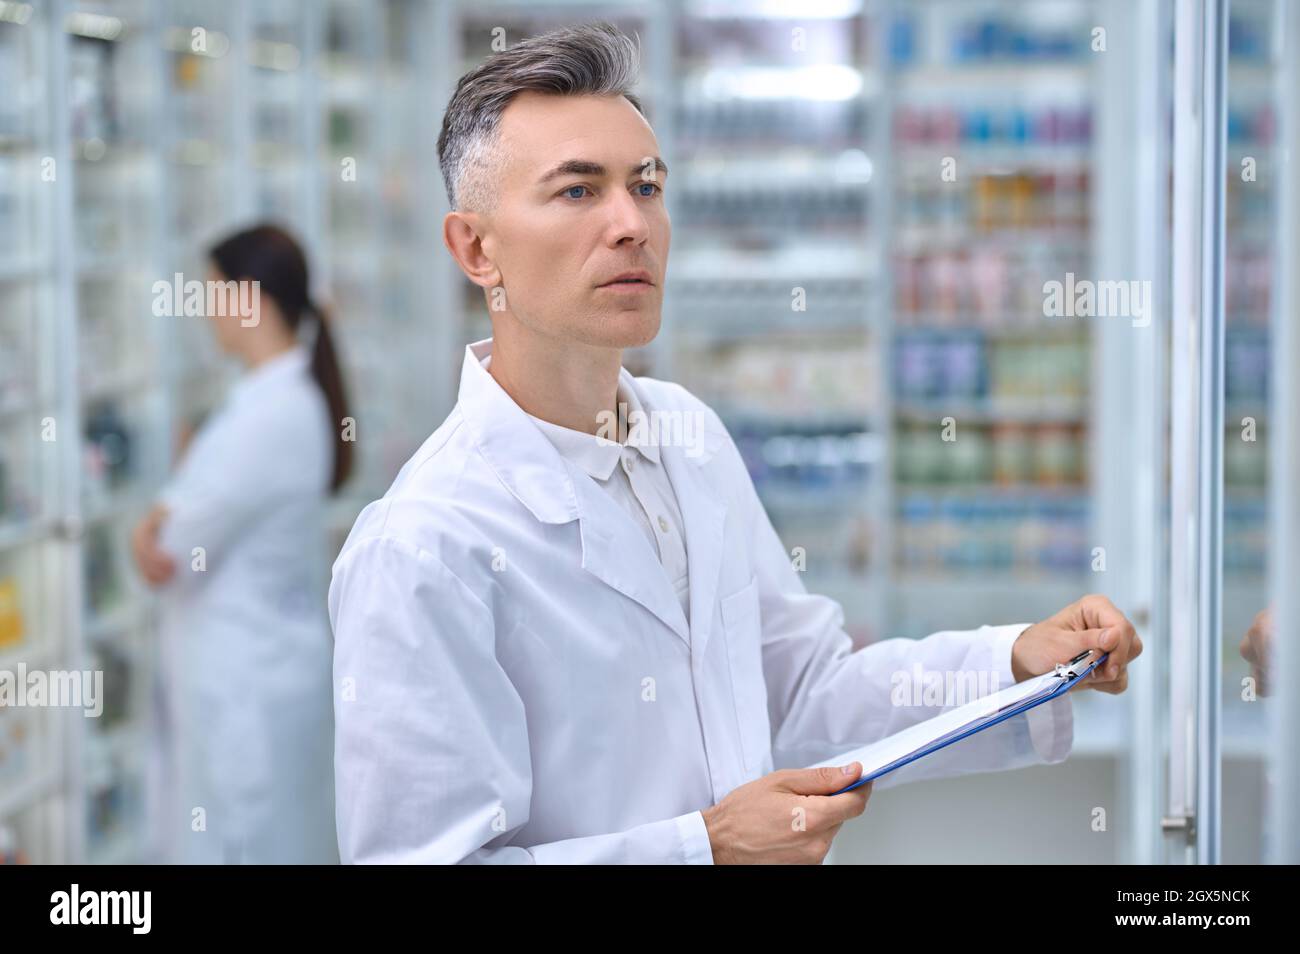 Homme avec dossier regardant des étagères avec des médicaments Banque D'Images